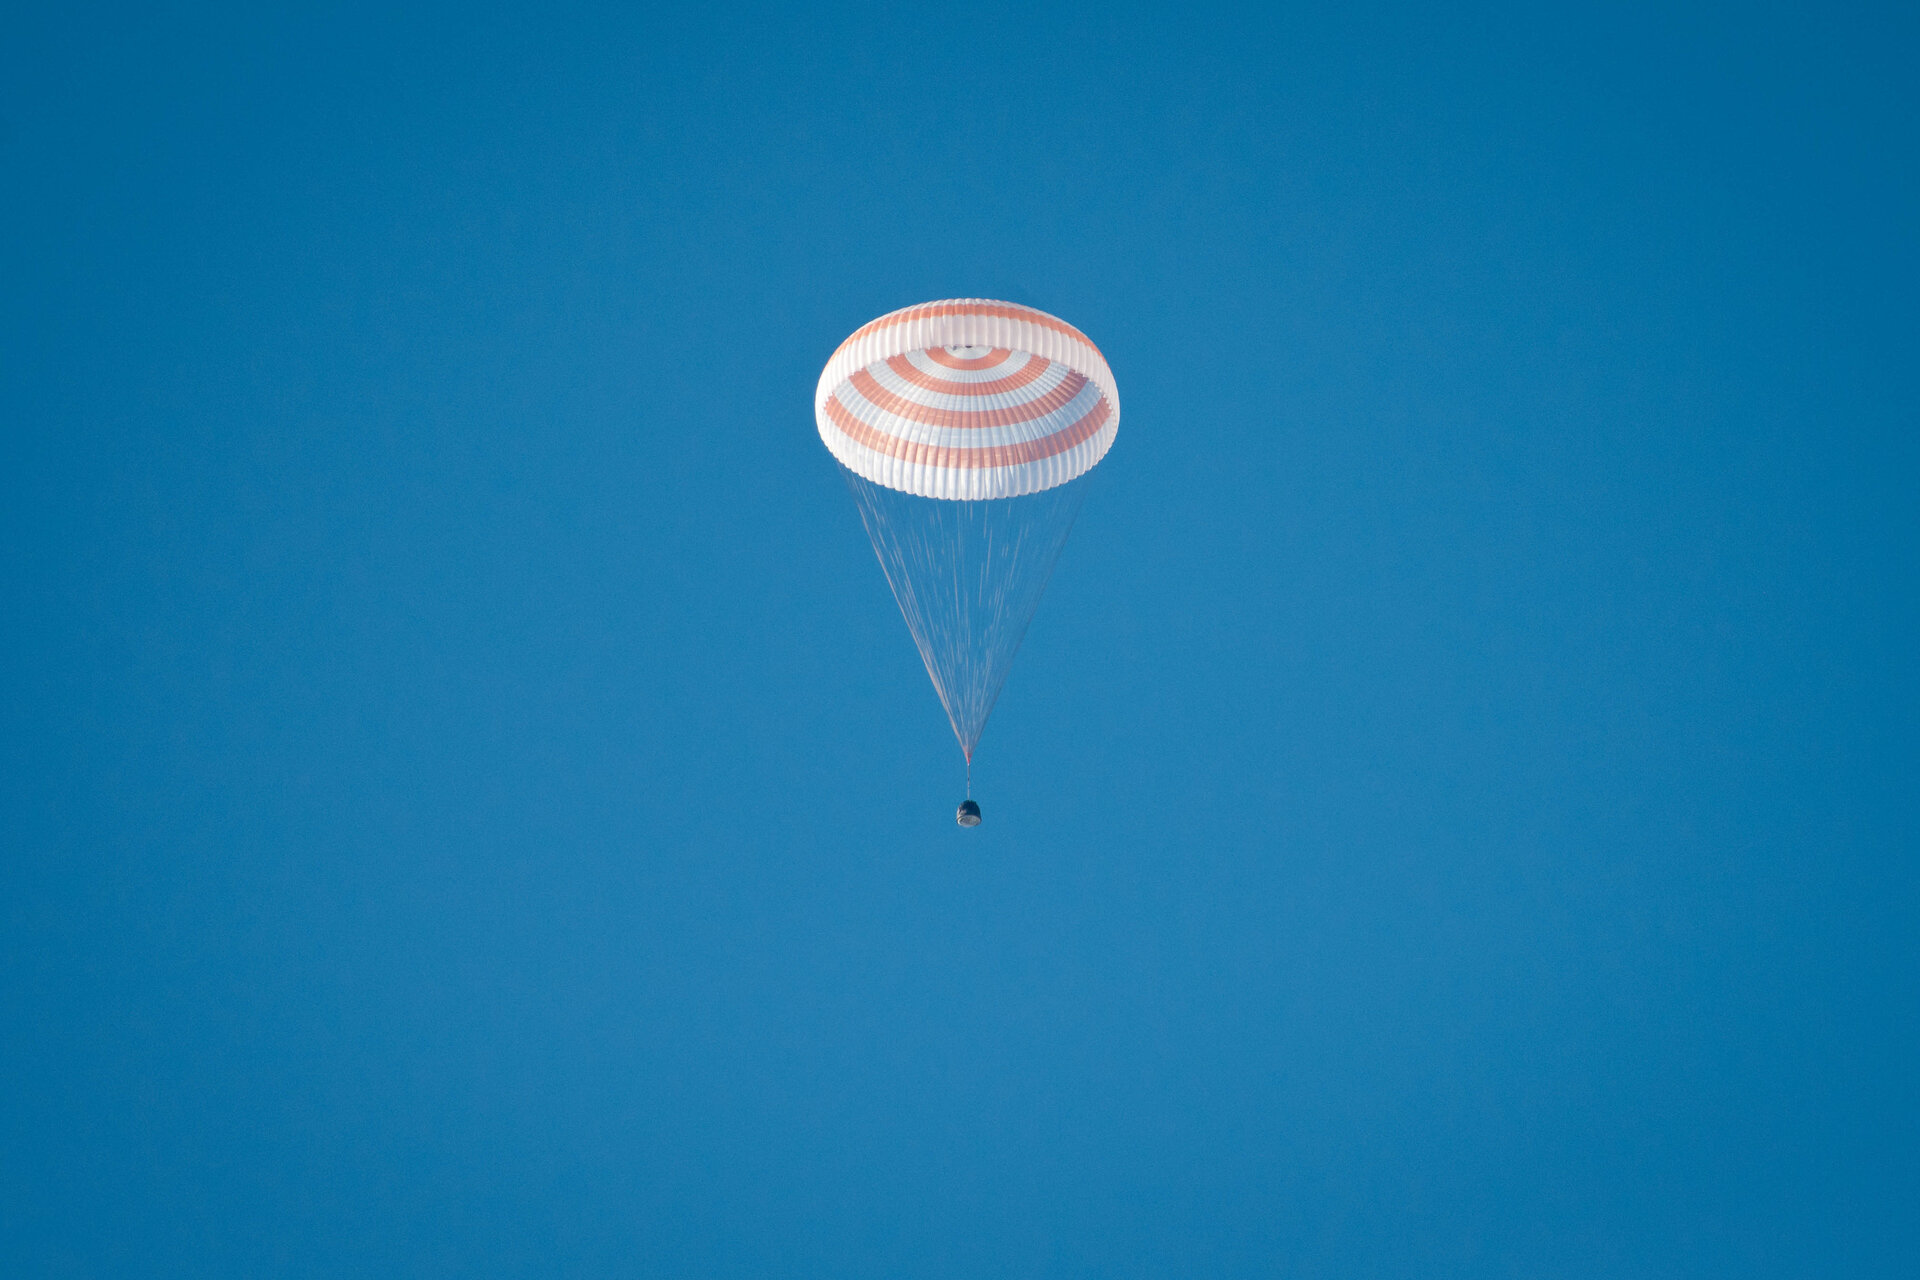 Το διαστημόπλοιο Soyuz προσγειώθηκε με τη βοήθεια αλεξίπτωτου